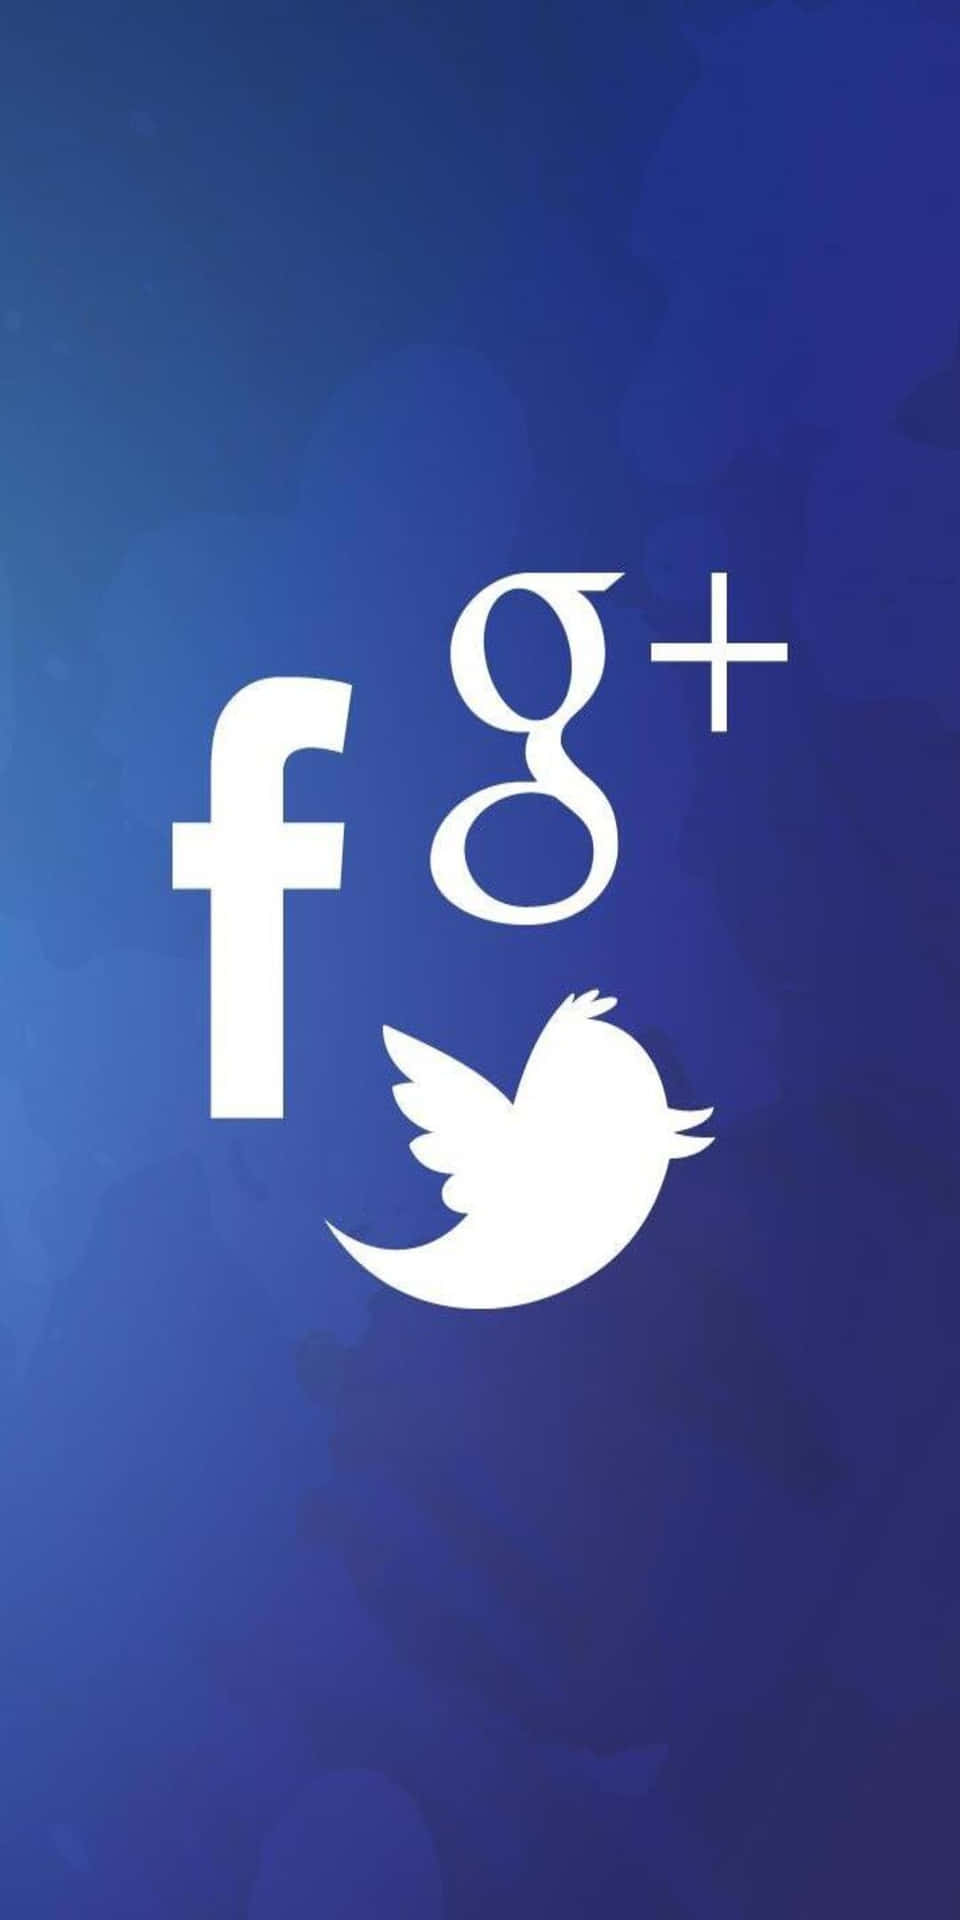 Sfondosociale Pixel 3 Per Facebook, Twitter E Google.